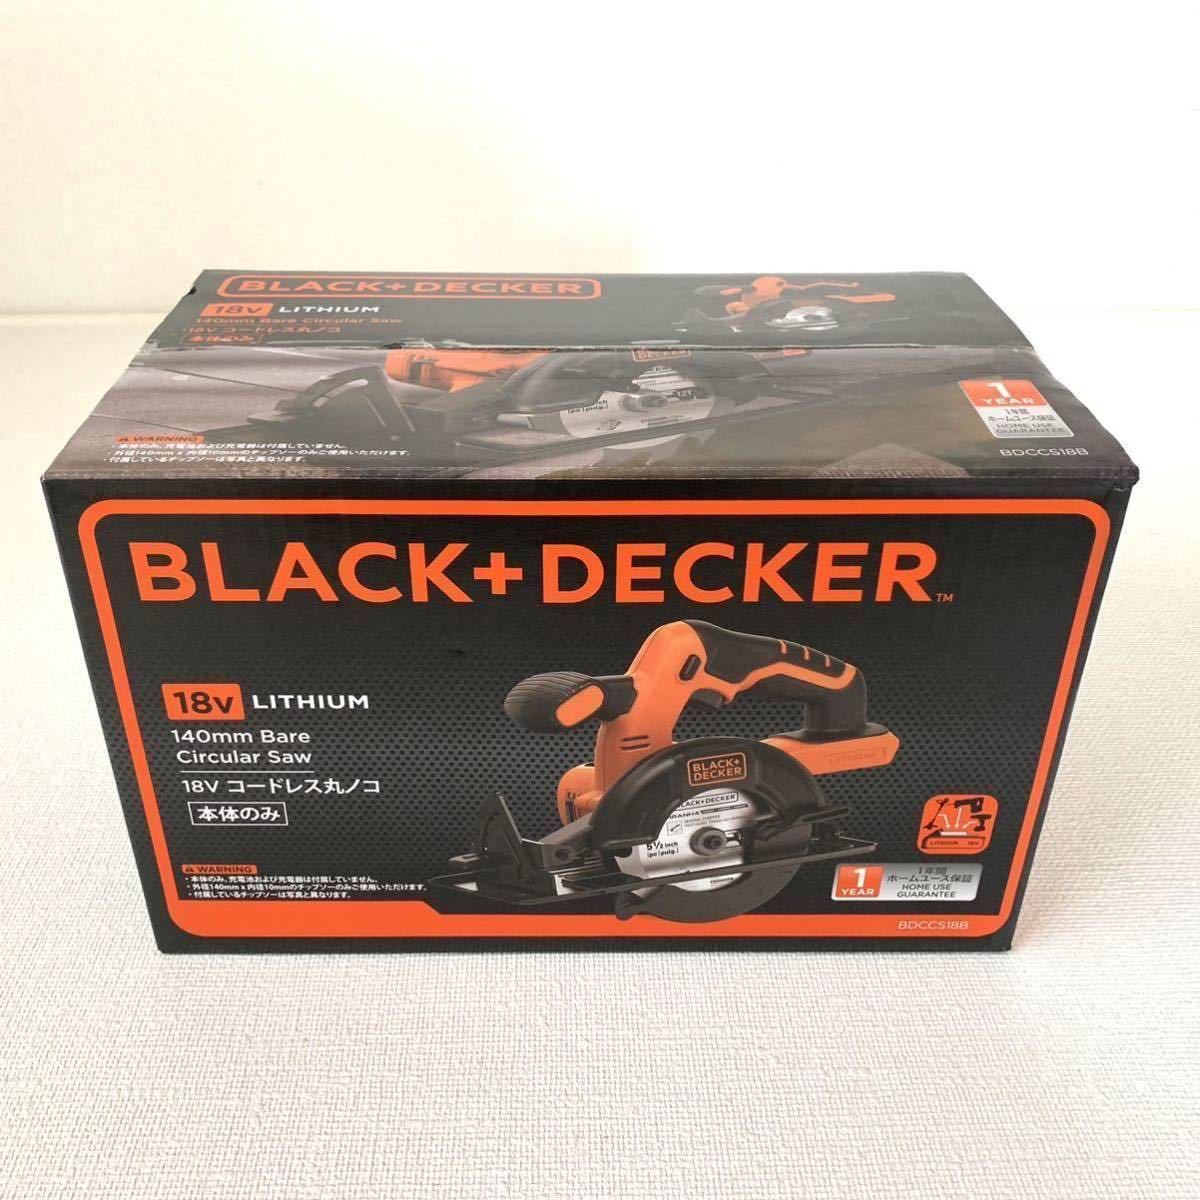 ブラックアンドデッカー(BLACK+DECKER) 18V コードレス丸ノコ【本体のみ電池別売】 BDCCS18B マルチEVO